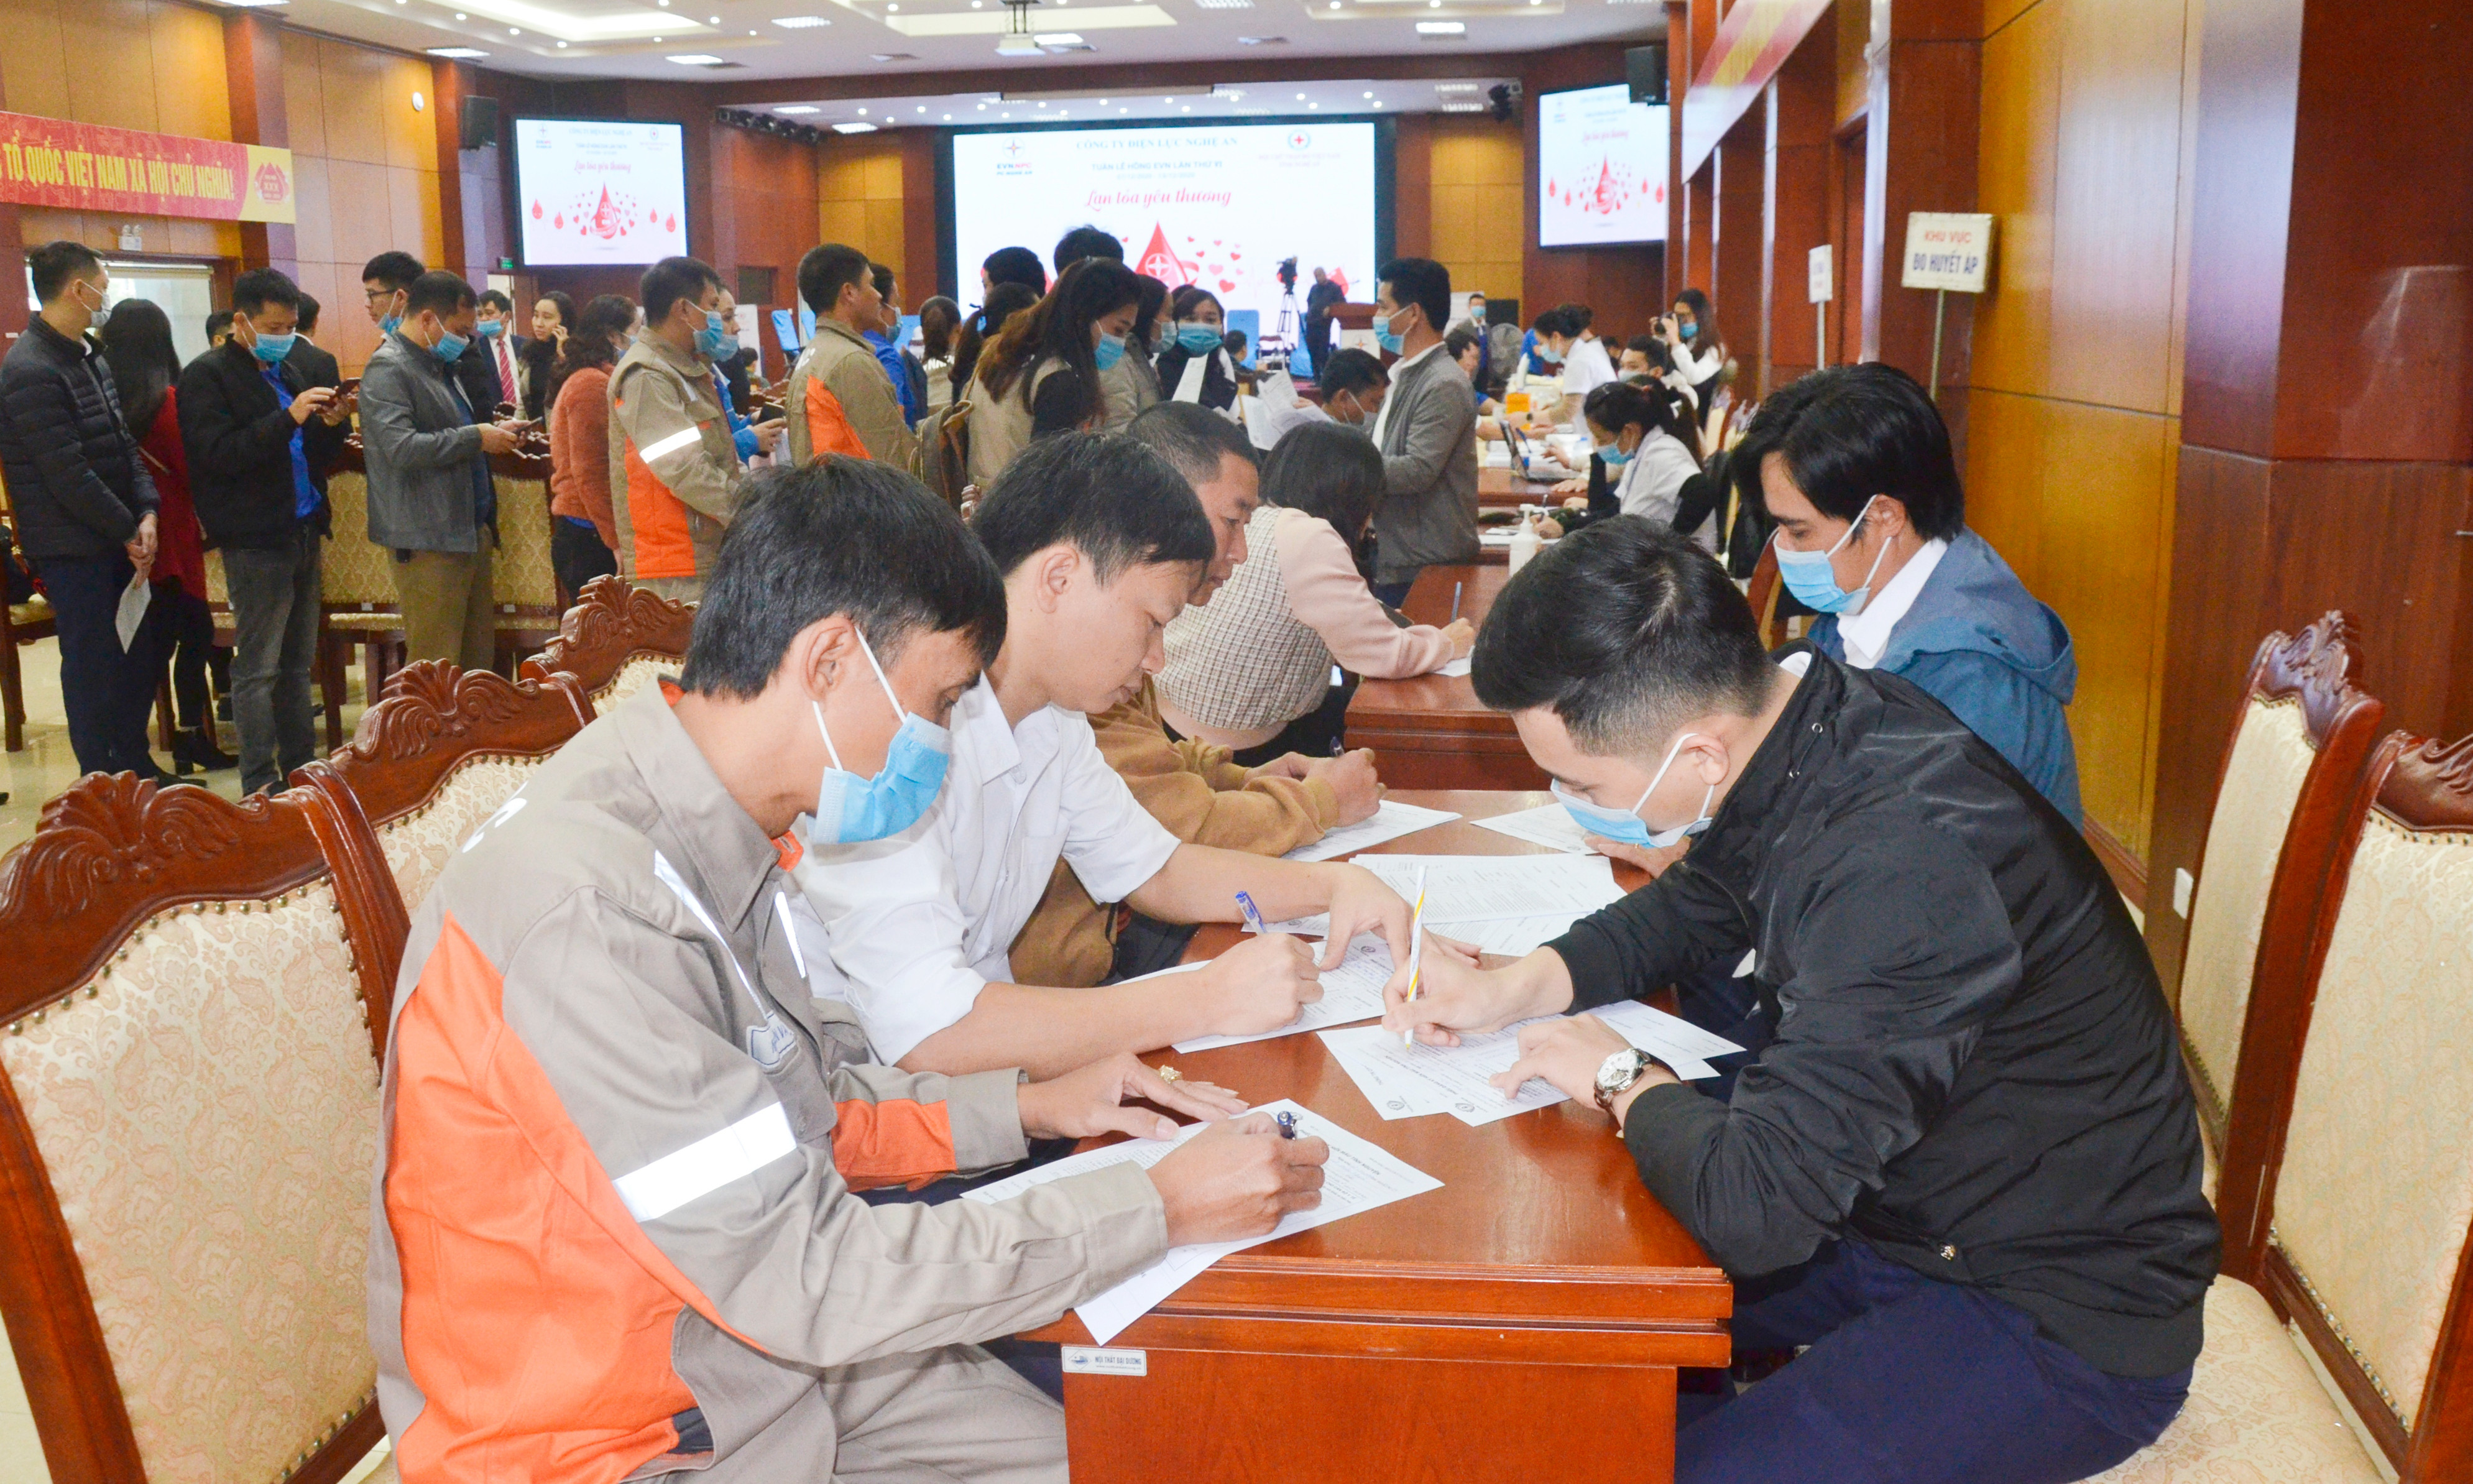 Cán bộ công chức người lao động Công ty Điện lực Nghệ An tham gia đăng ký hiến máu nhân đạo. Ảnh: Thanh Lê